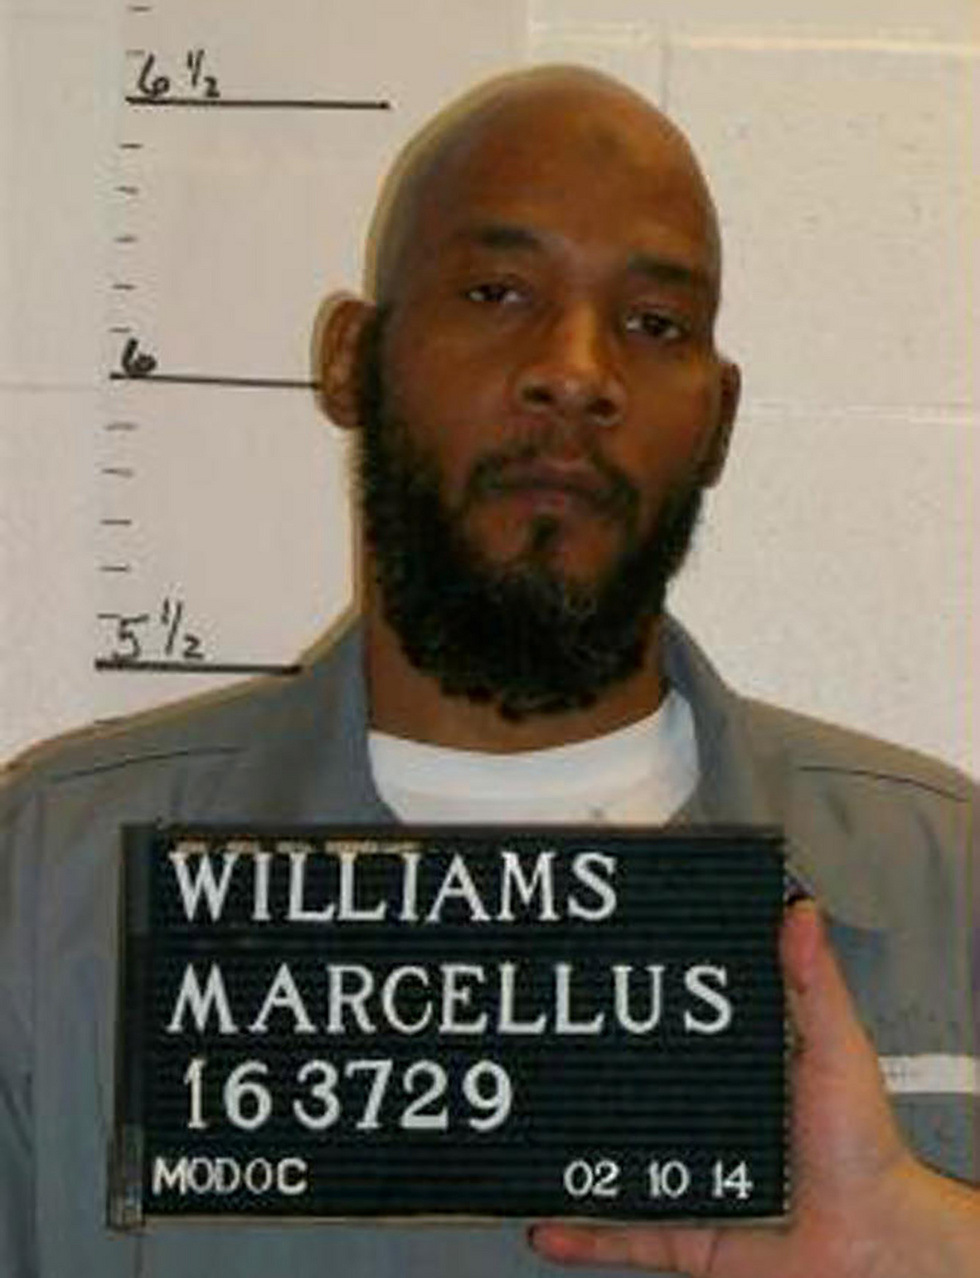 הואשם שדקר את הקורבן שלו 43 פעמים. מרסלוס וויליאמס (צילום: רויטרס) (צילום: רויטרס)